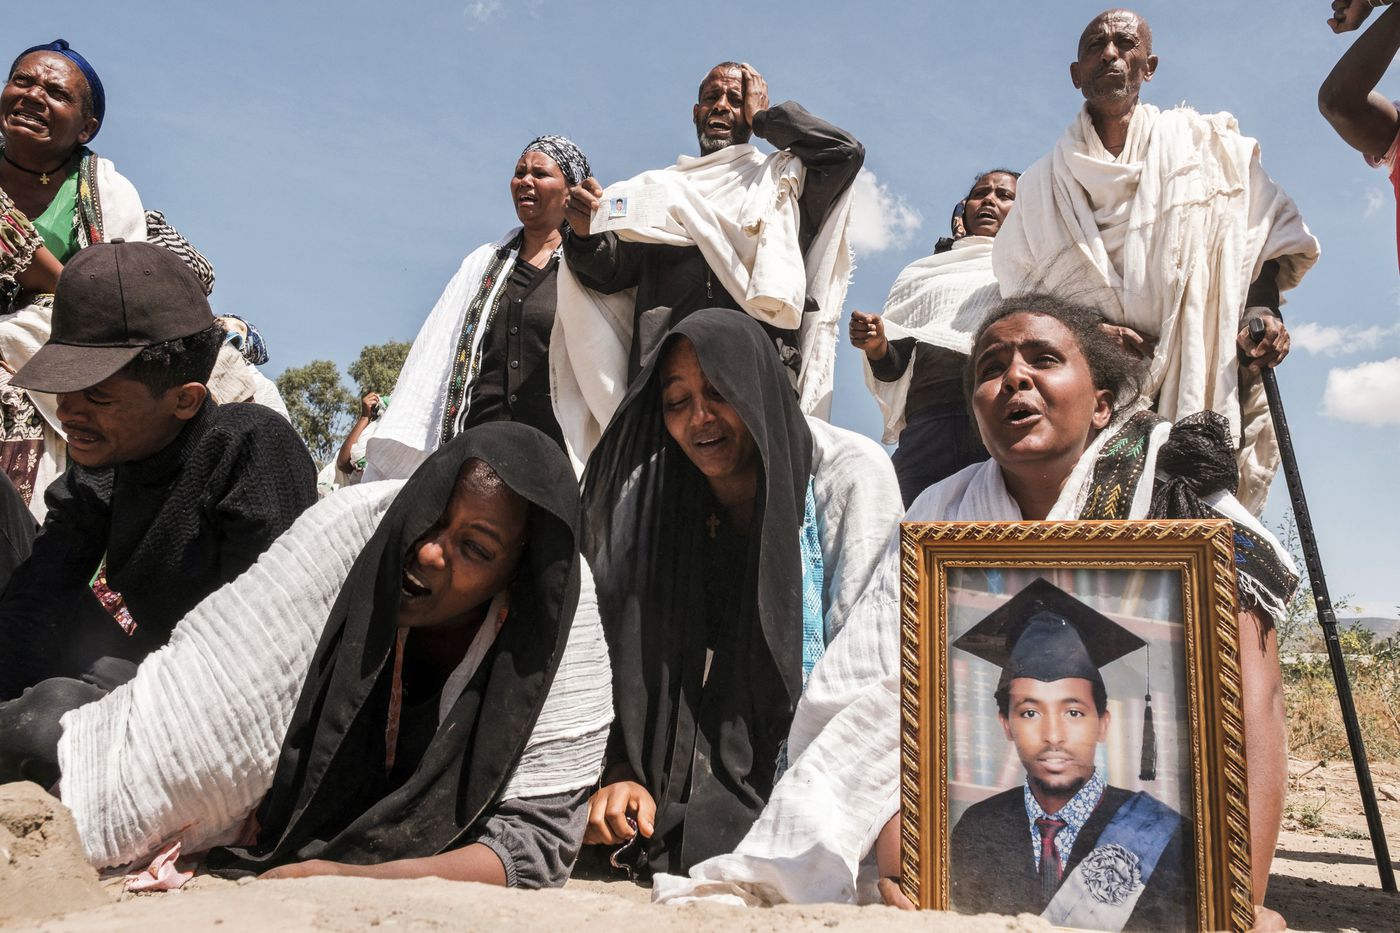  العفو الدولية  و هيومن رايتس ووتش  القوات الإثيوبية ارتكبت جرائم حرب في إقليم تيجراي